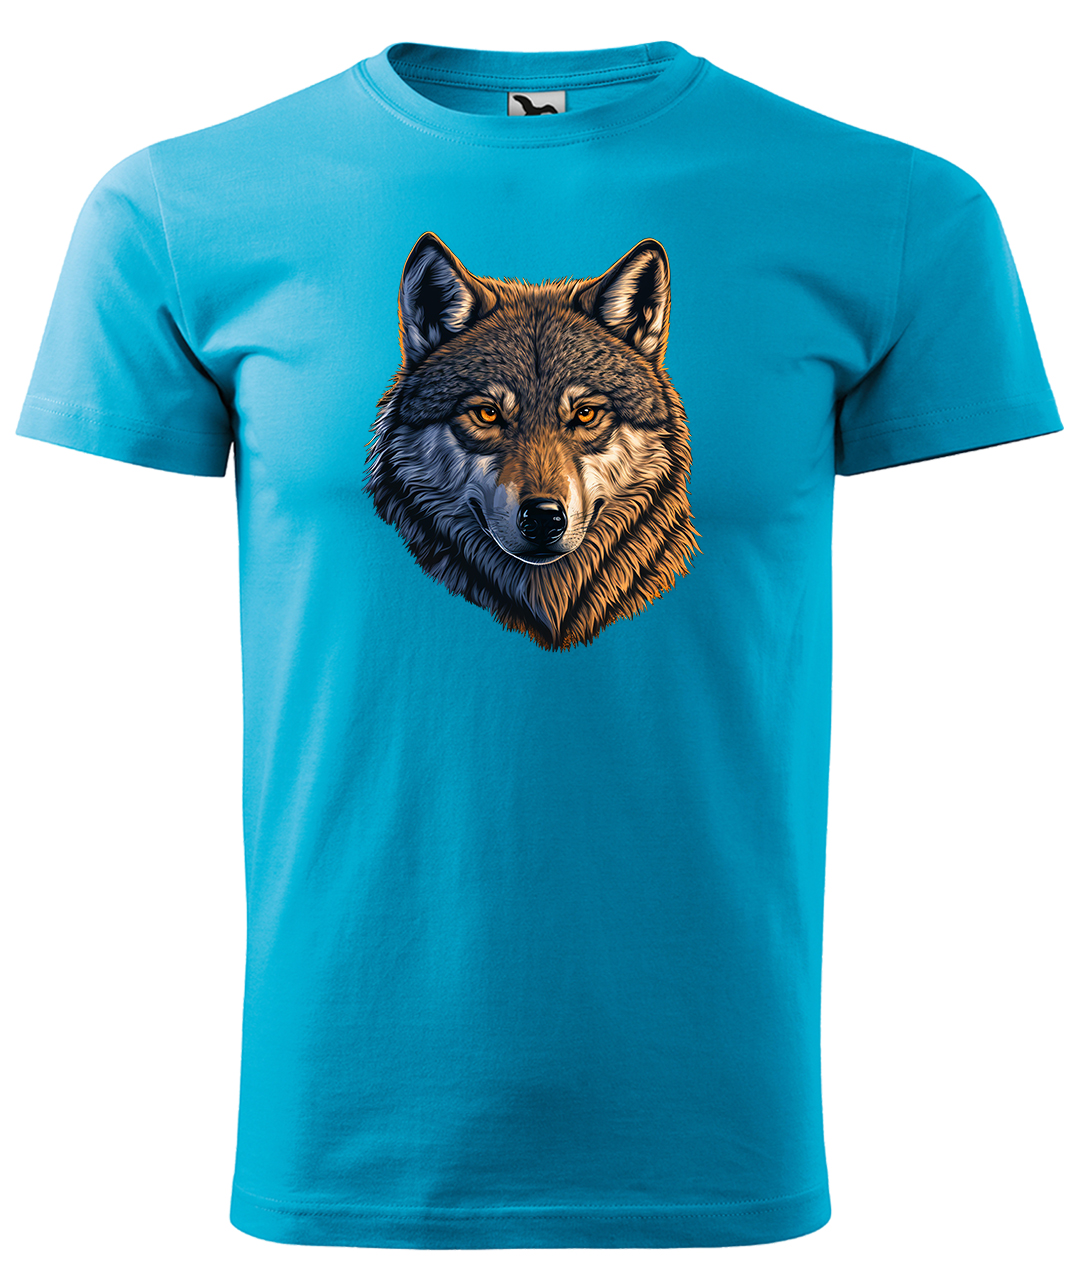 Dětské tričko s vlkem - Hlava vlka Velikost: 8 let / 134 cm, Barva: Tyrkysová (44), Délka rukávu: Krátký rukáv